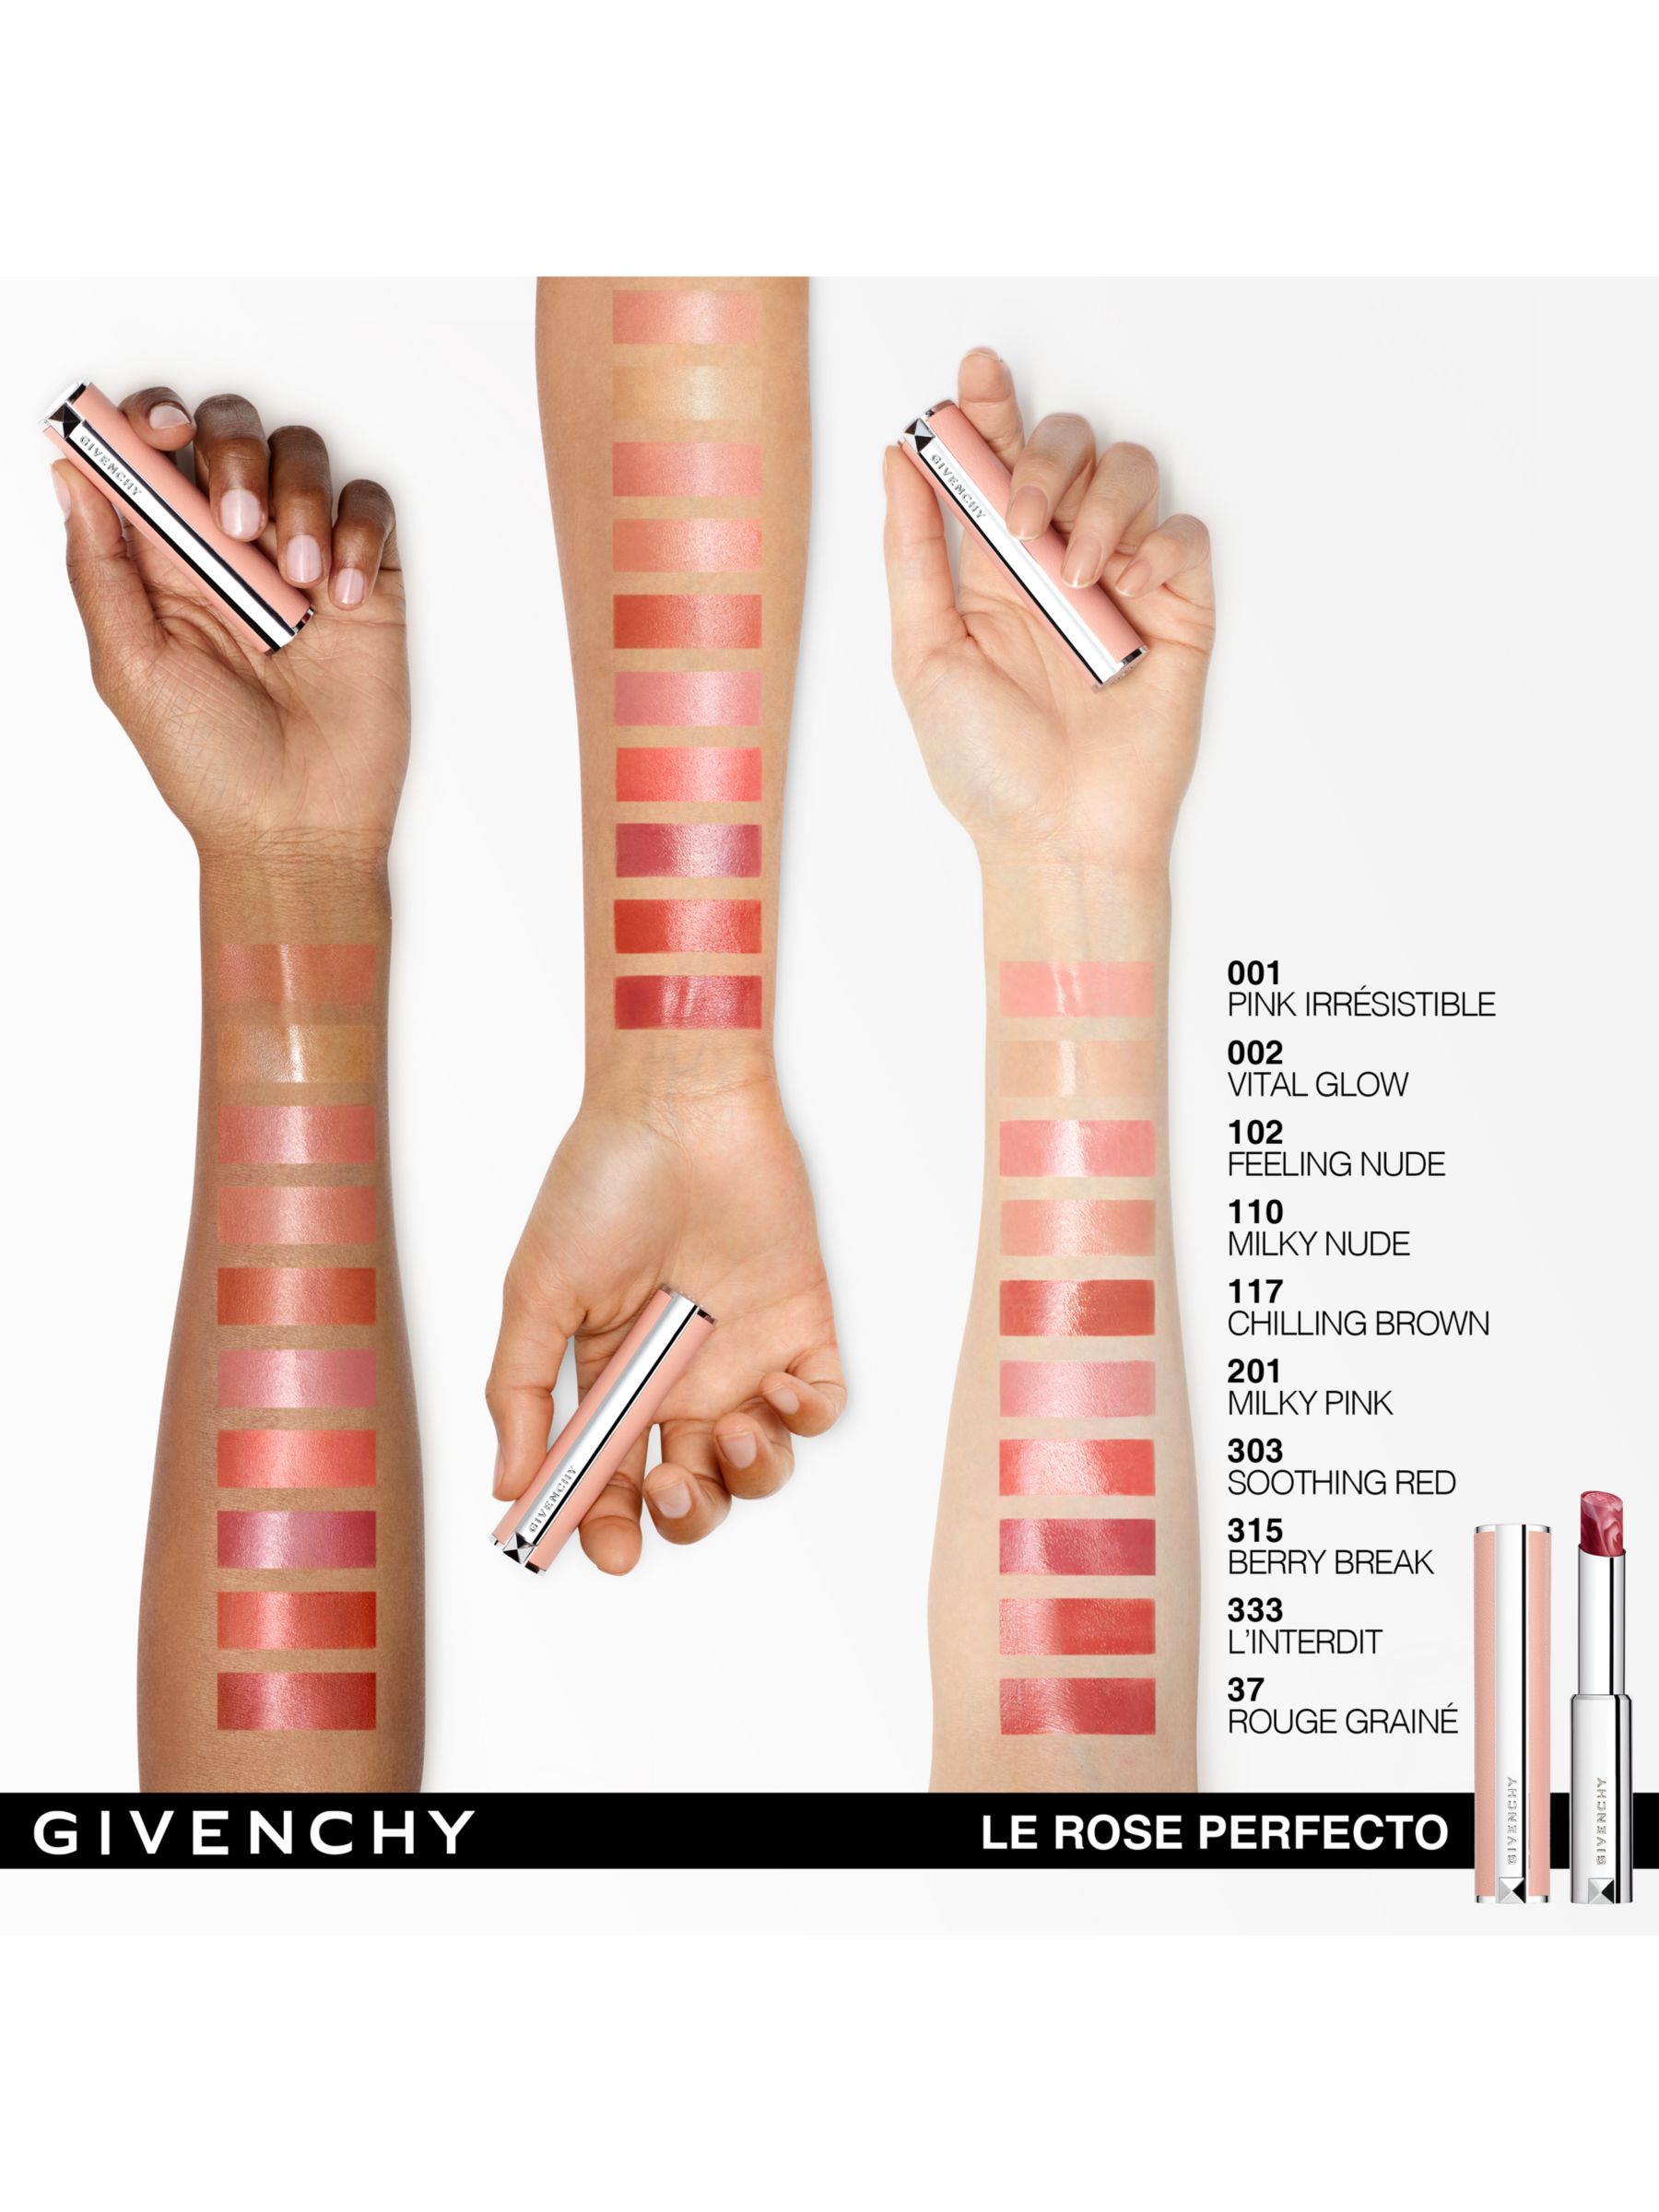 Givenchy Rose Perfecto Beautifying Lip Balm, N001 Pink Irrésistible 6